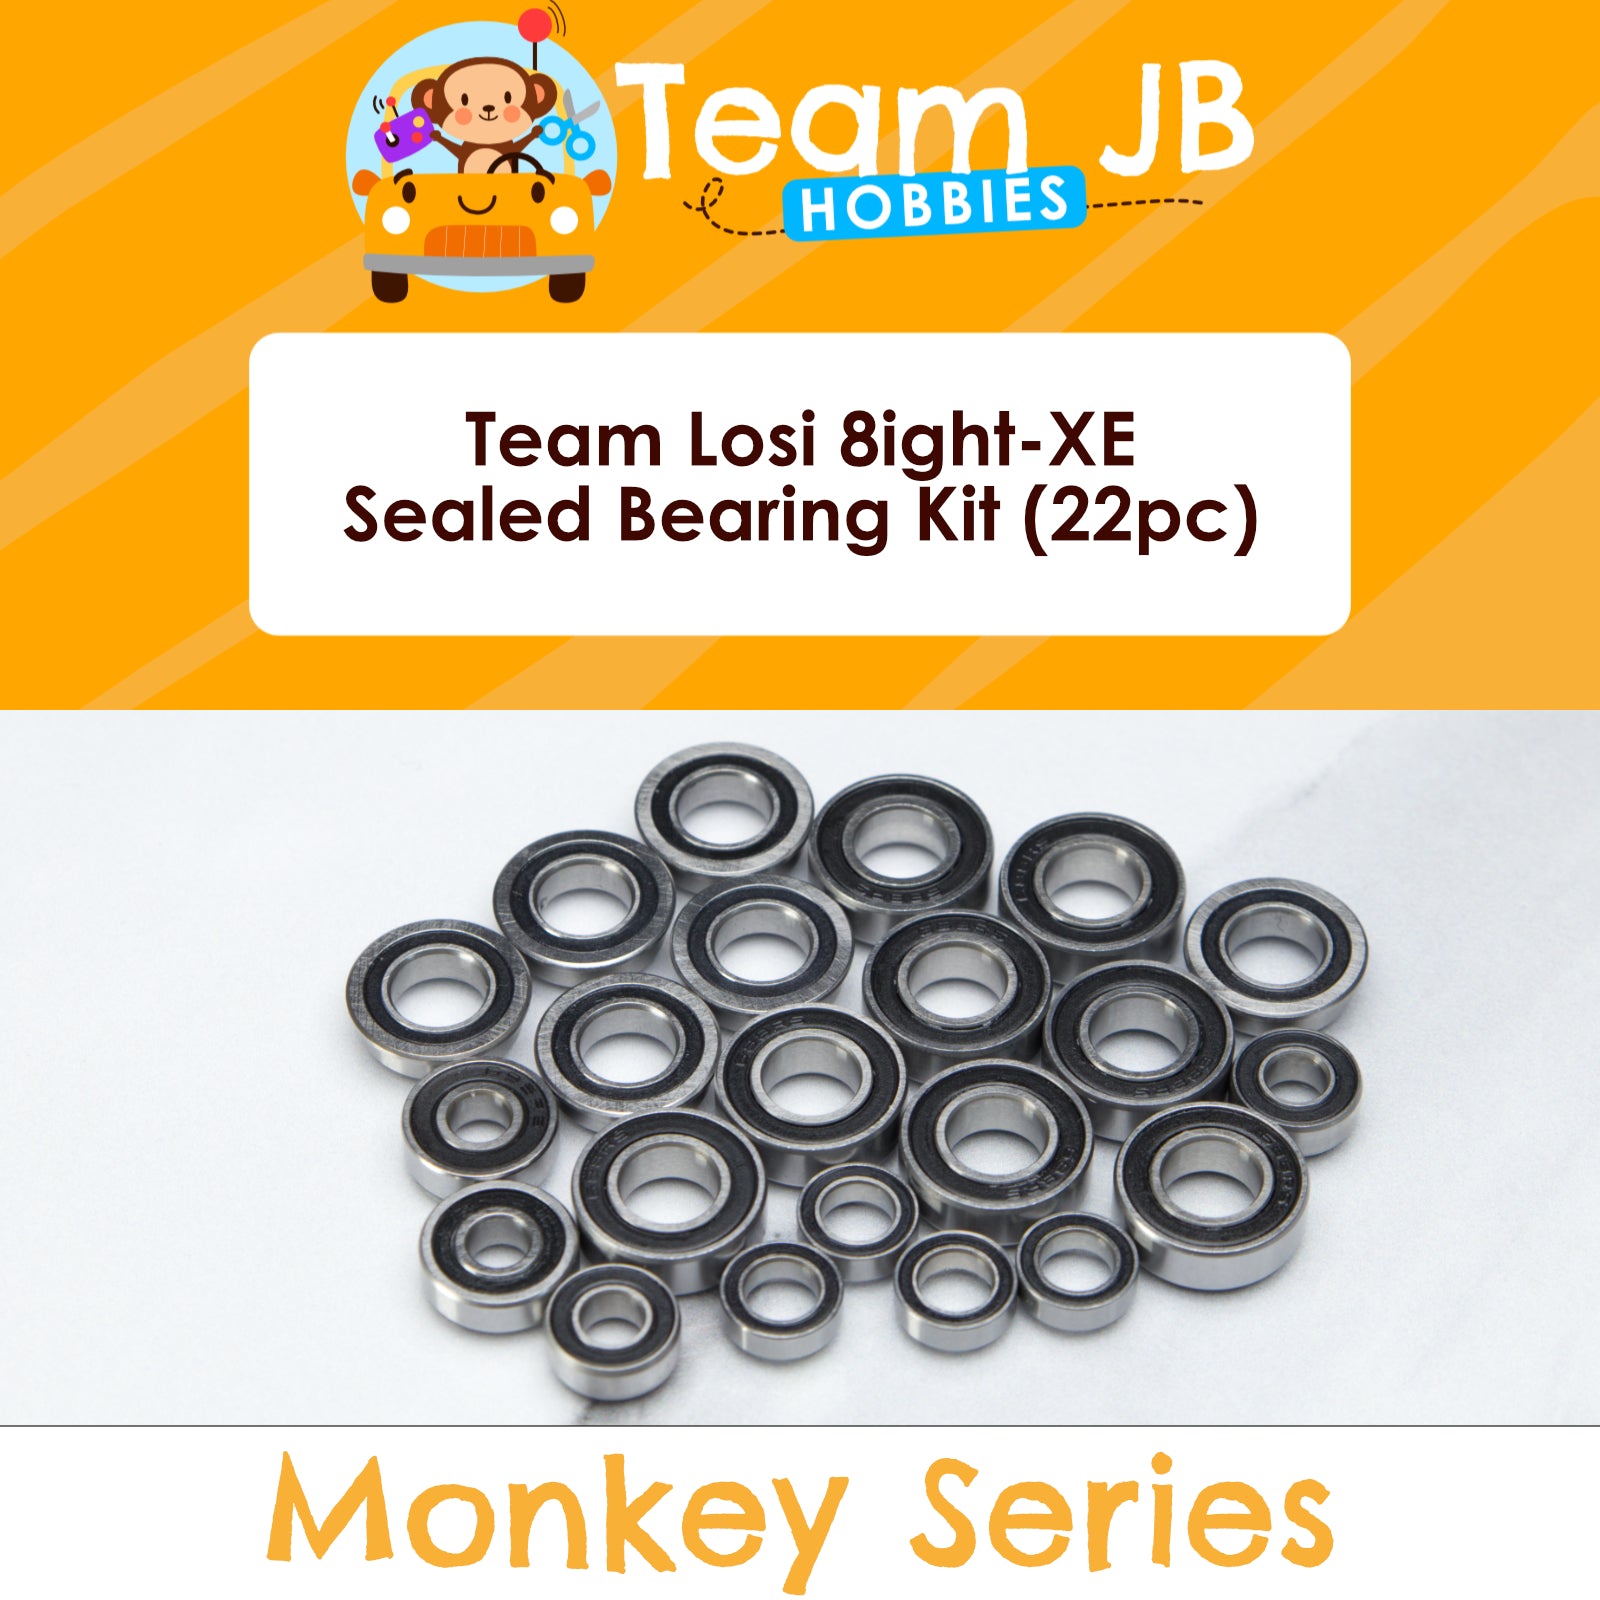 Team Losi 8ight-XE - Sealed Bearing Kit